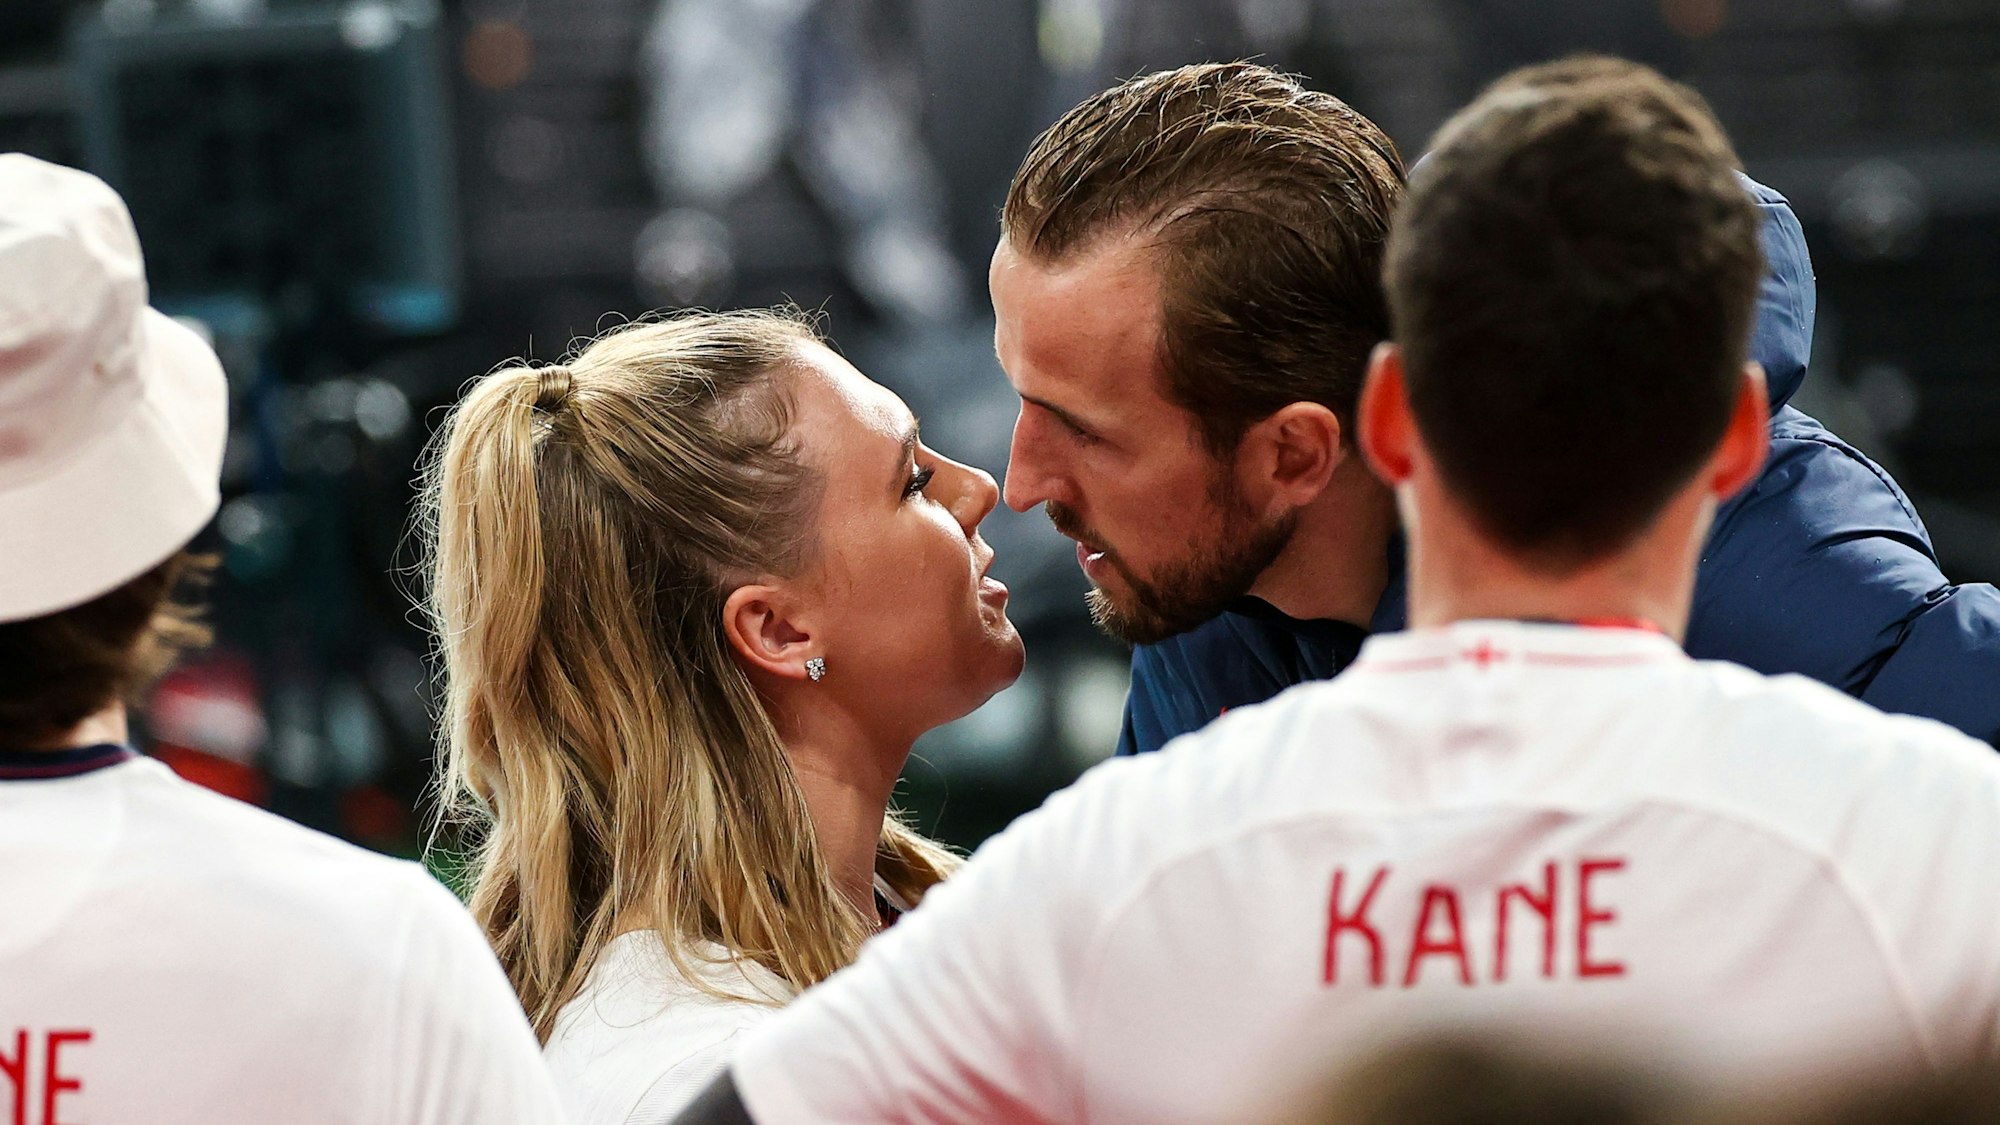 Englands Harry Kane küsst nach dem Spiel seine Frau Katie Goodland.